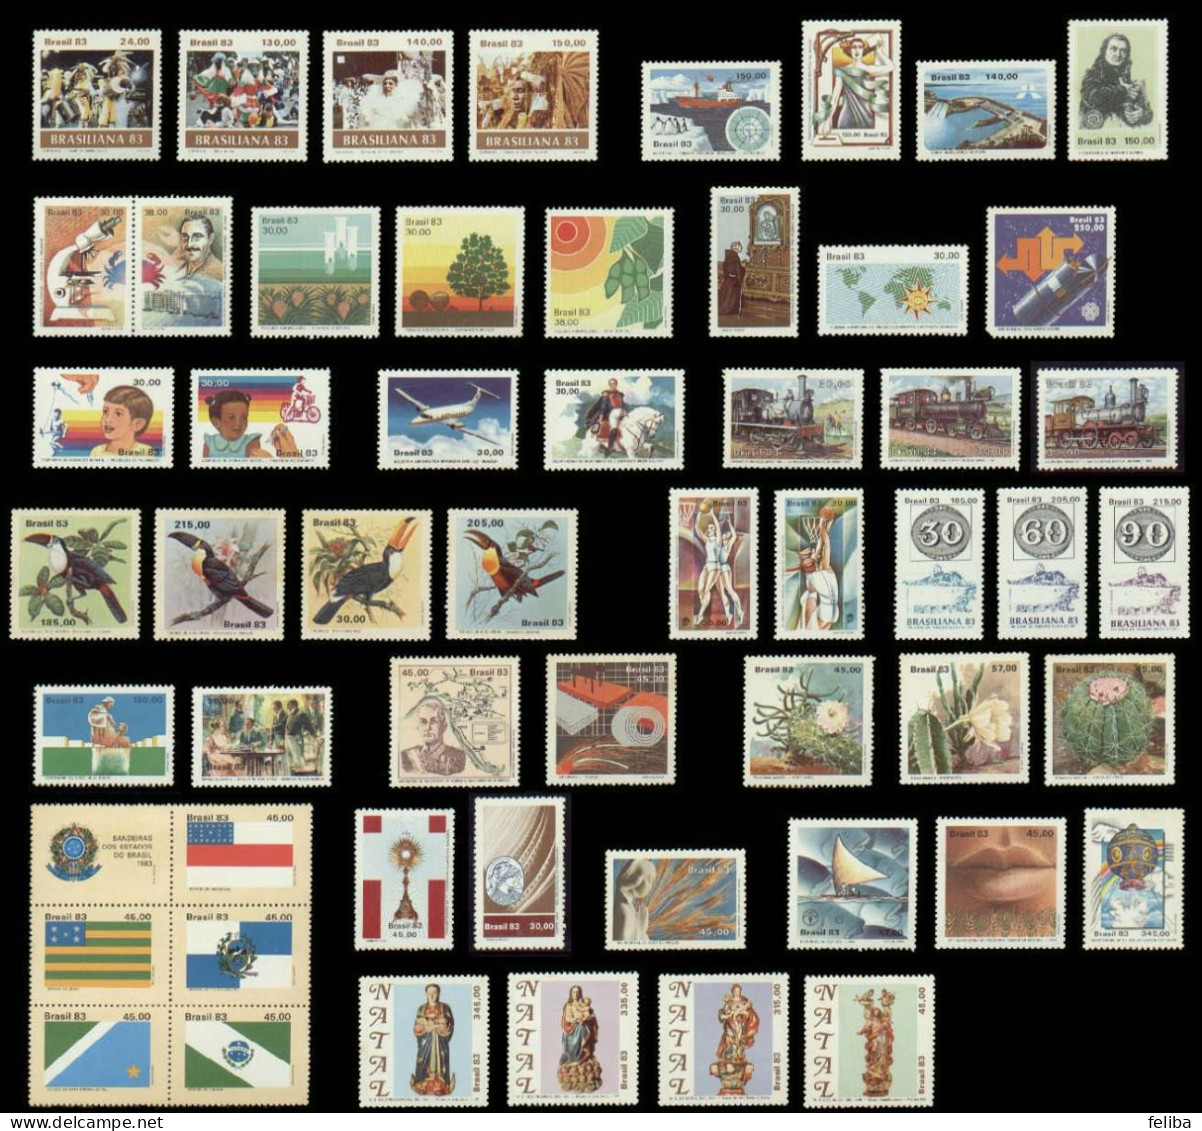 Brazil 1983 MNH Commemorative Stamps - Années Complètes